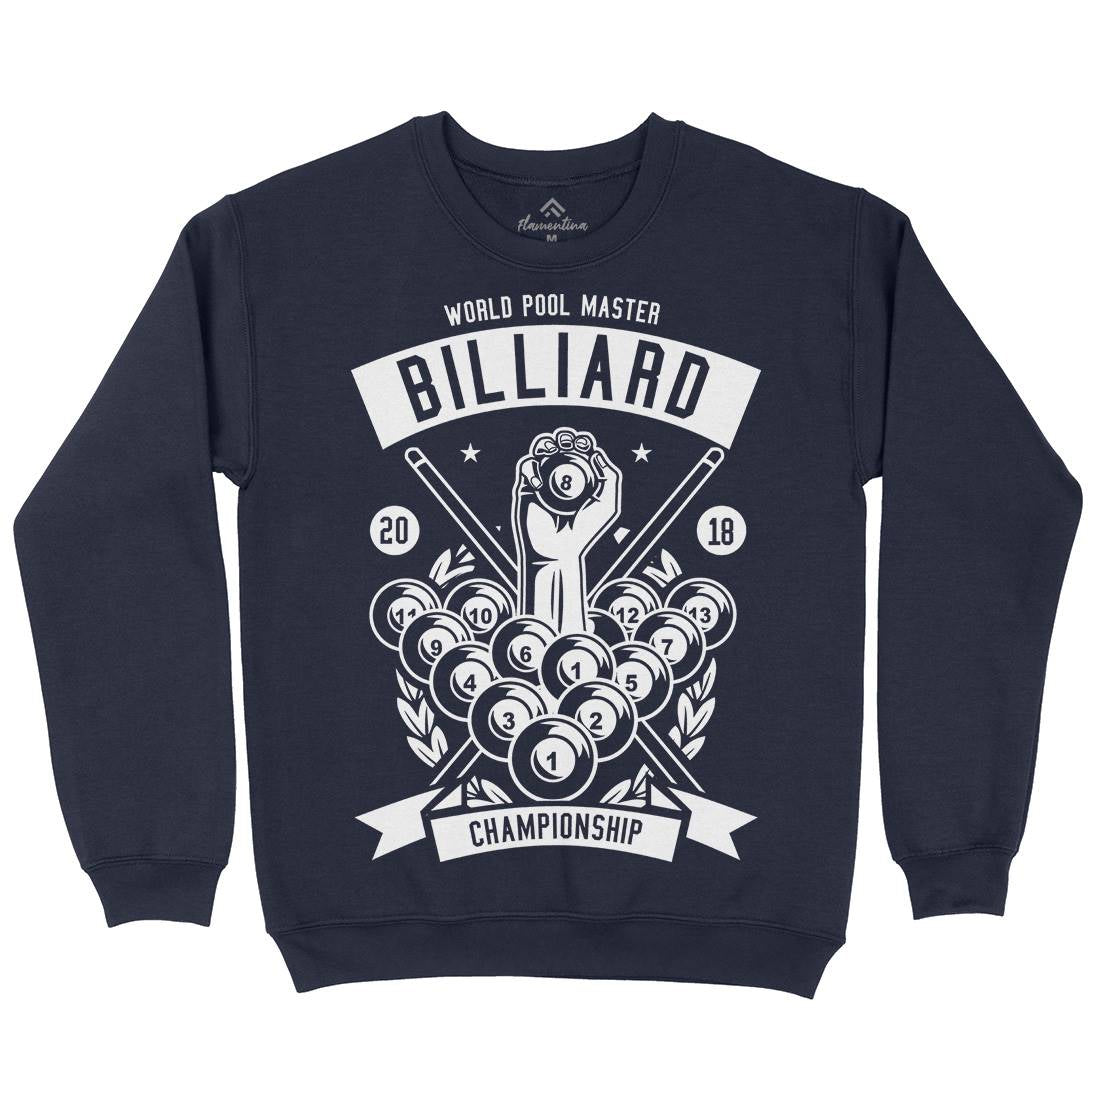 Billiard Championship Kids Crew Neck Sweatshirt Sport B499